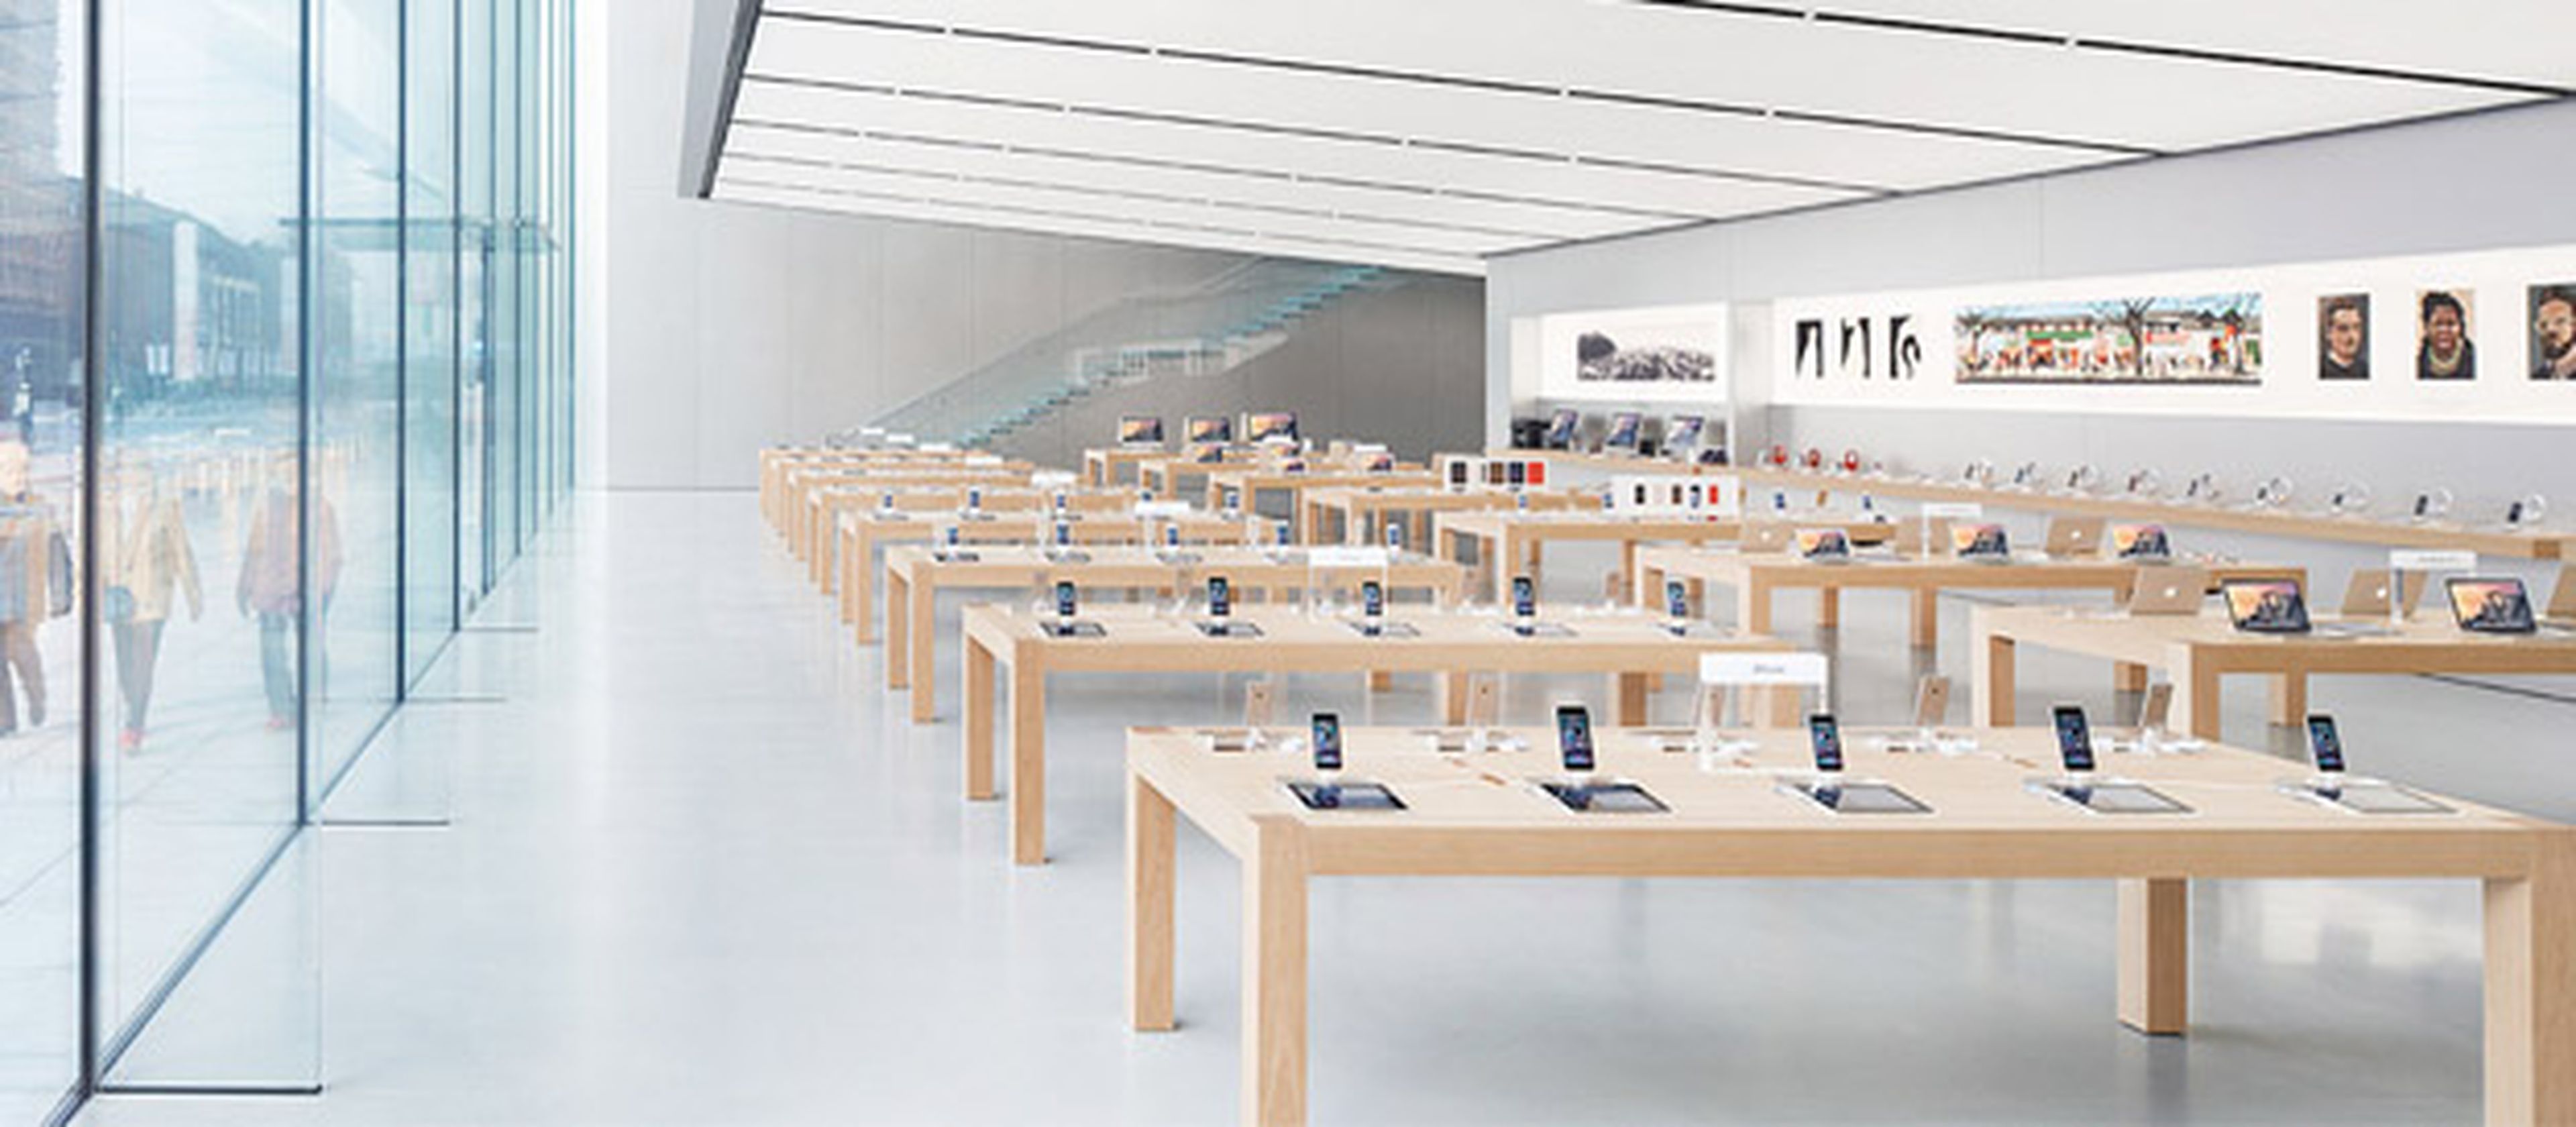 Tienda de Apple con dispositivos de la compañía